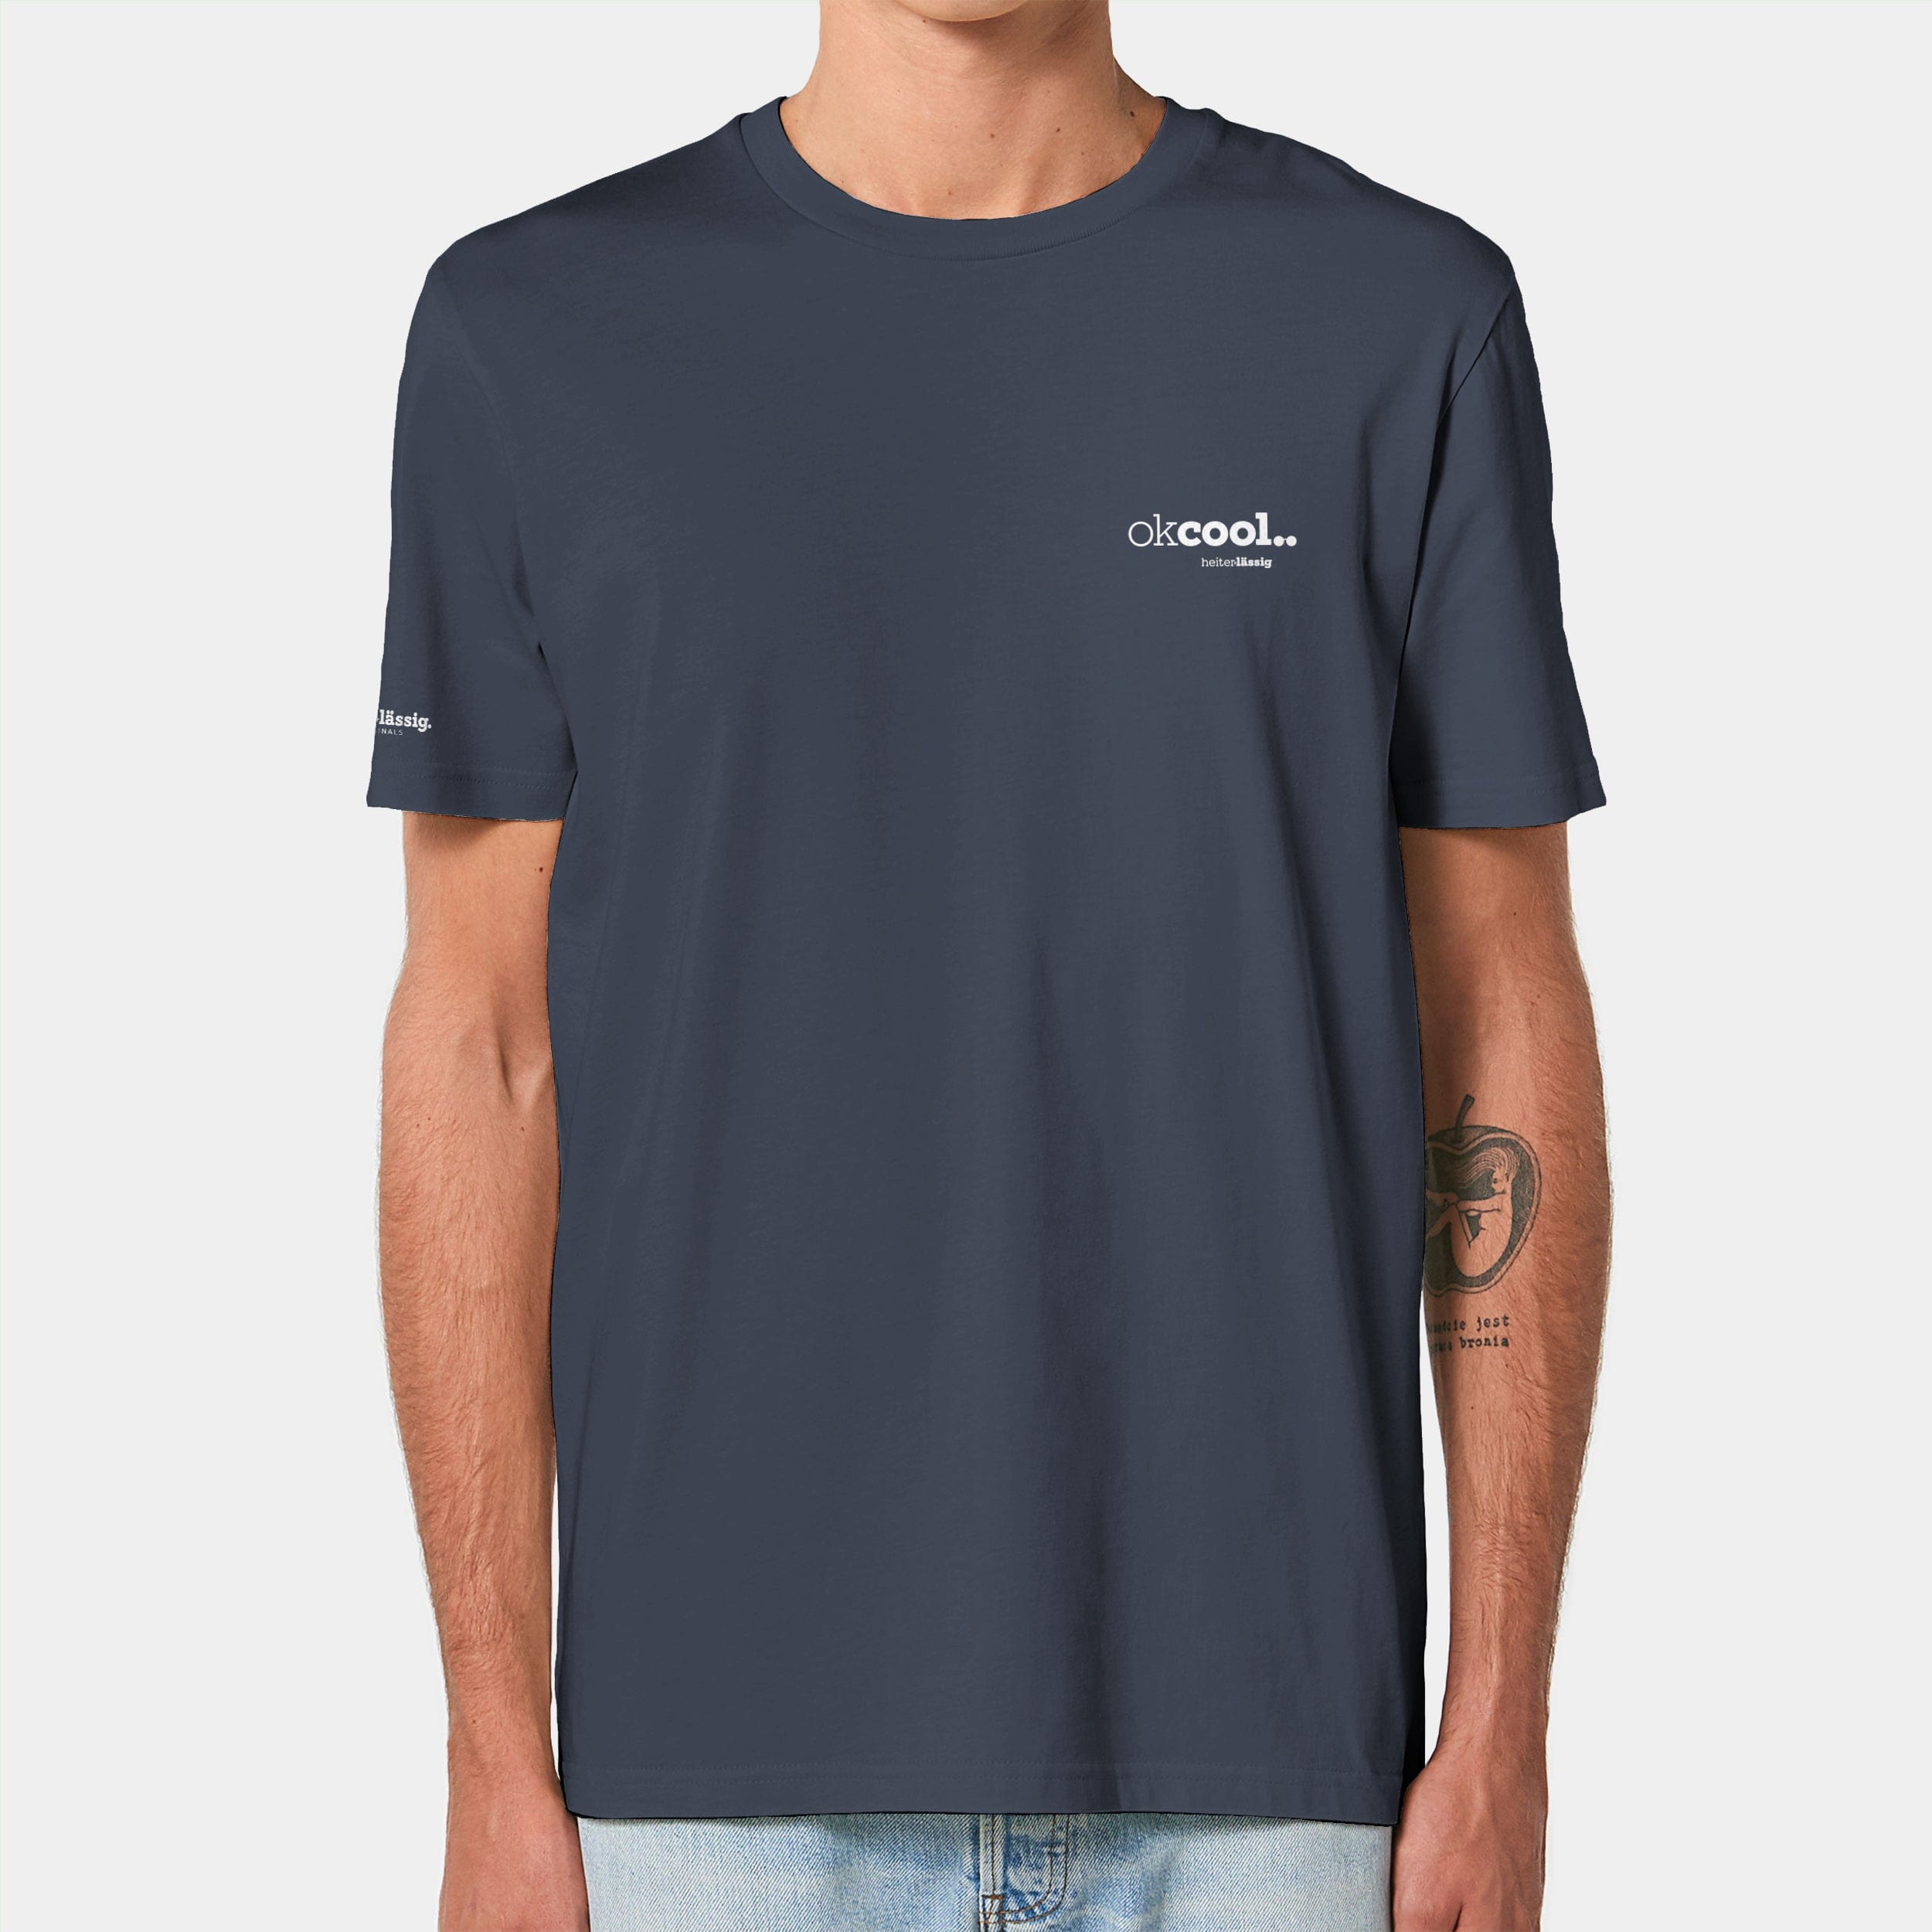 HEITER & LÄSSIG T-Shirt ORIGINAL "okcool" XXS / india ink grey - aus nachhaltiger und fairer Produktion